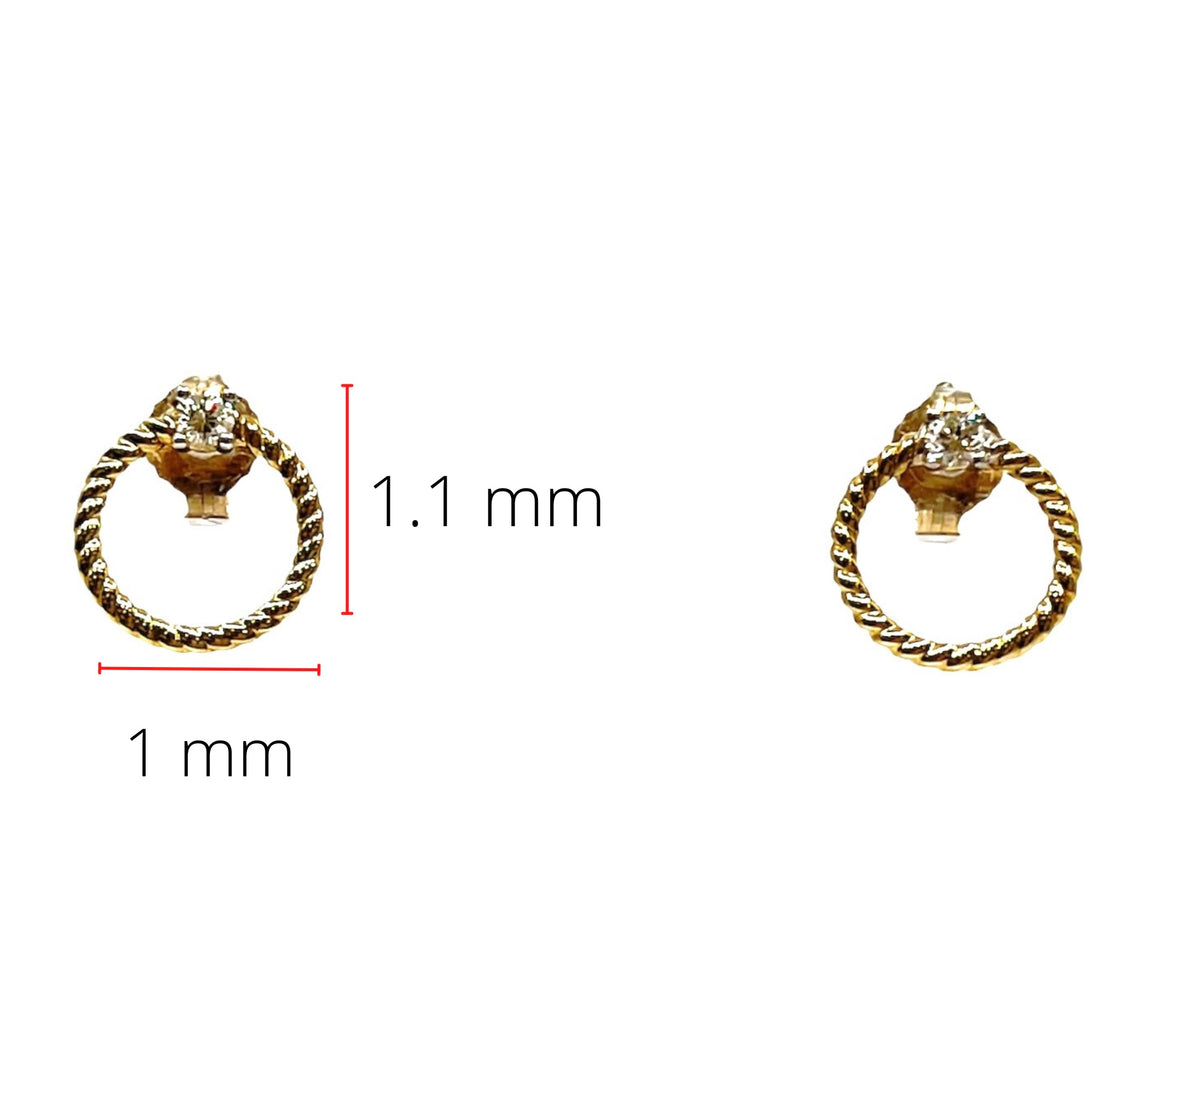 Pendientes circulares/infinitos con diamantes en oro amarillo de 10 quilates, 0,10 quilates